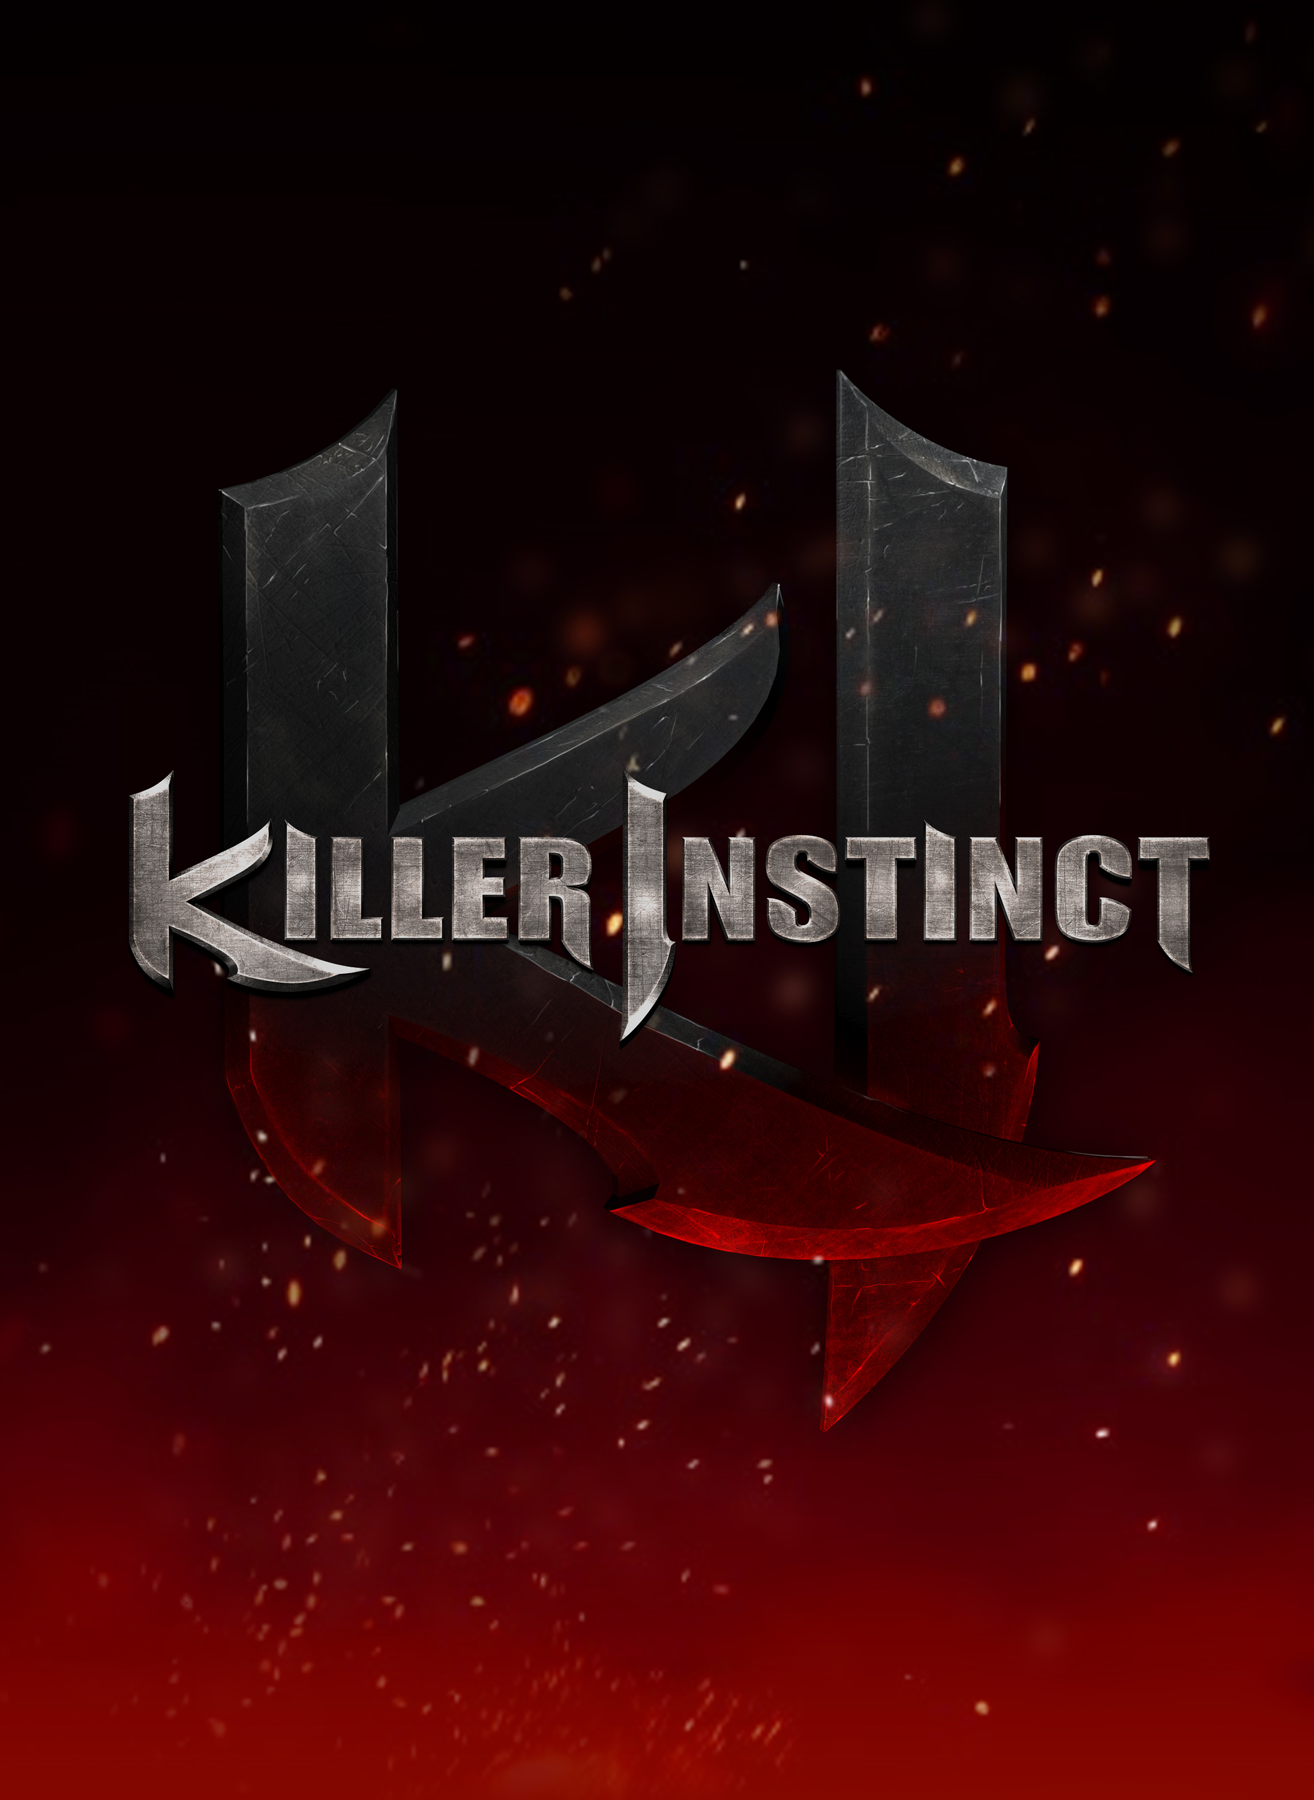 Killer Instinct gets new developer, Fulgore unleashed April 9